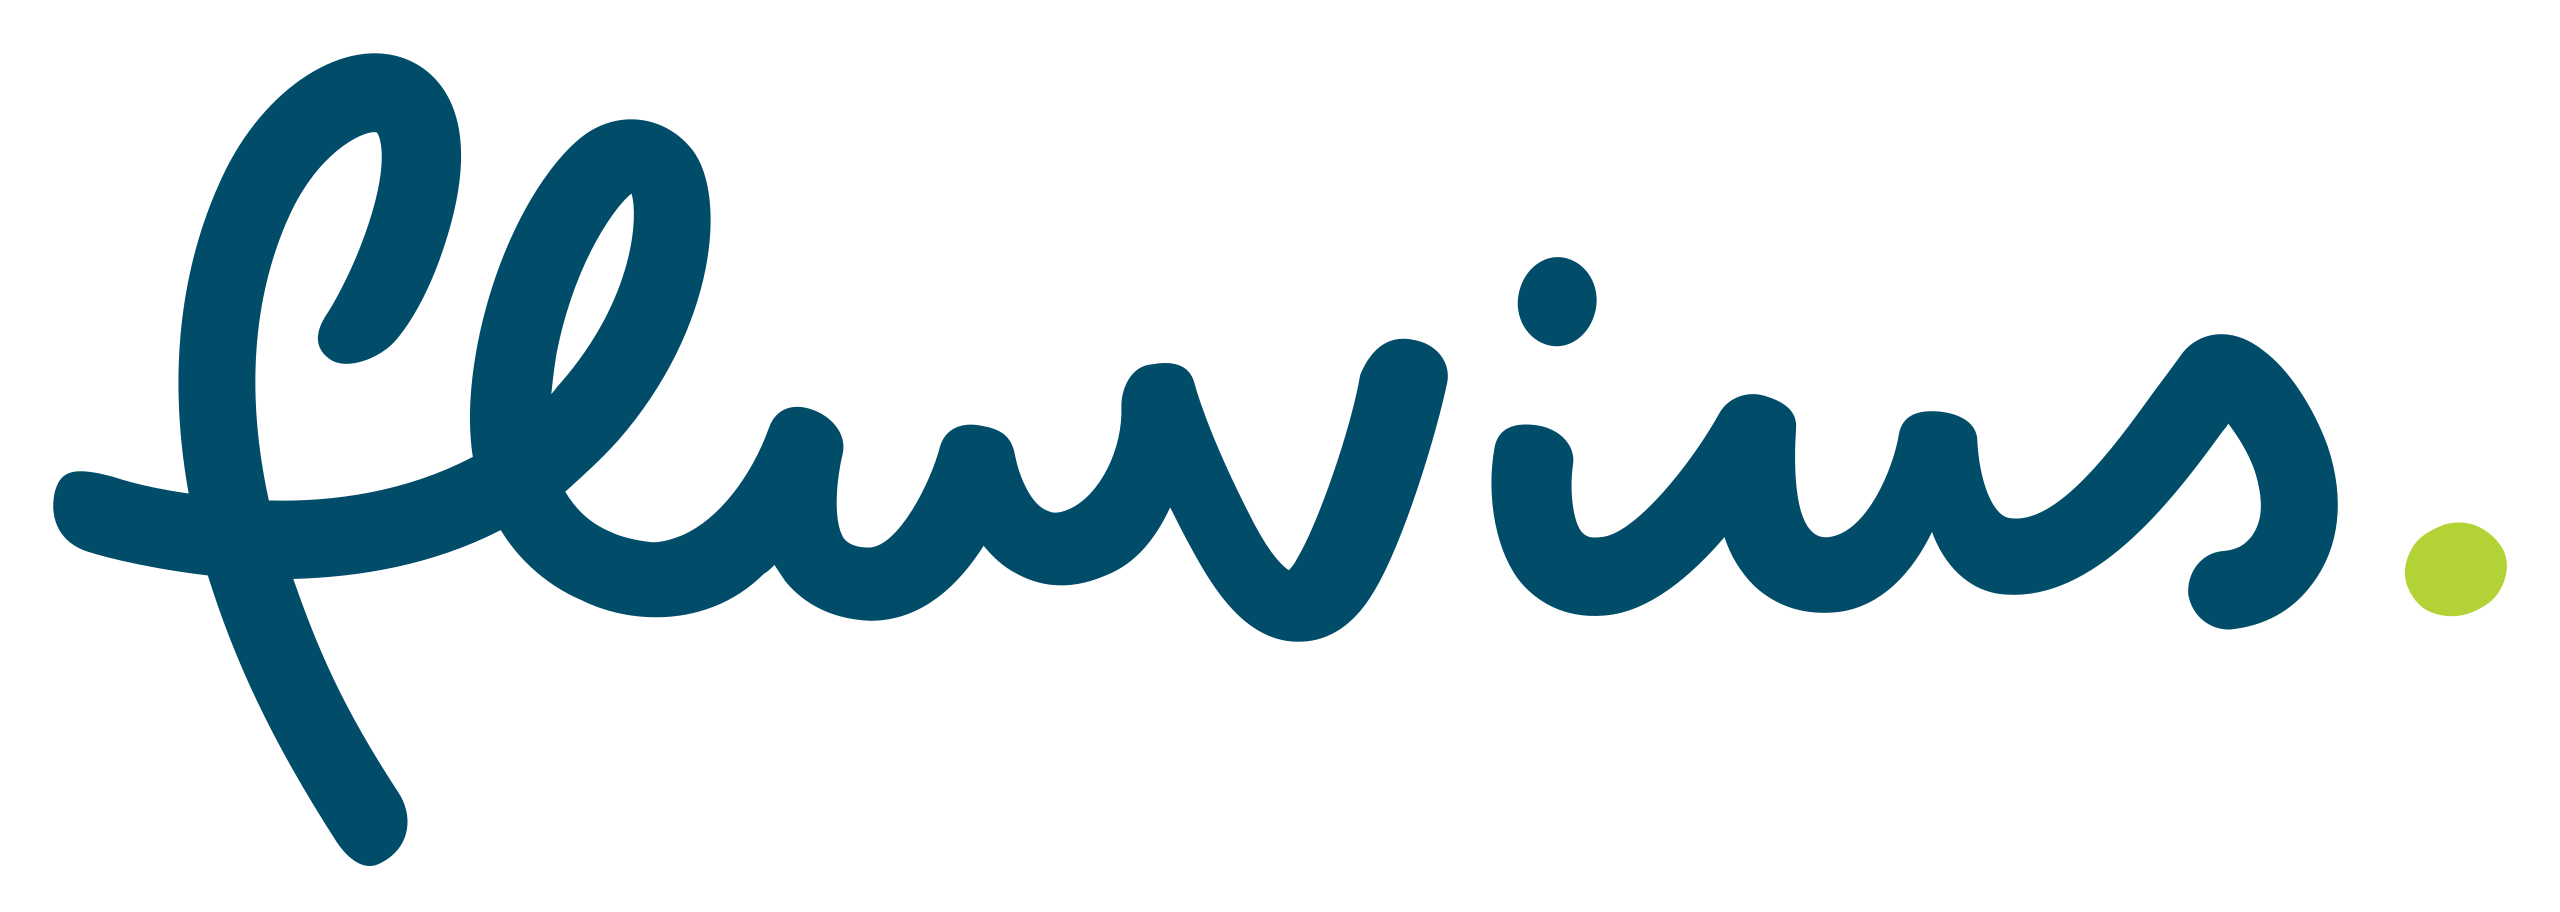 2560px-Fluvius_logo.svg